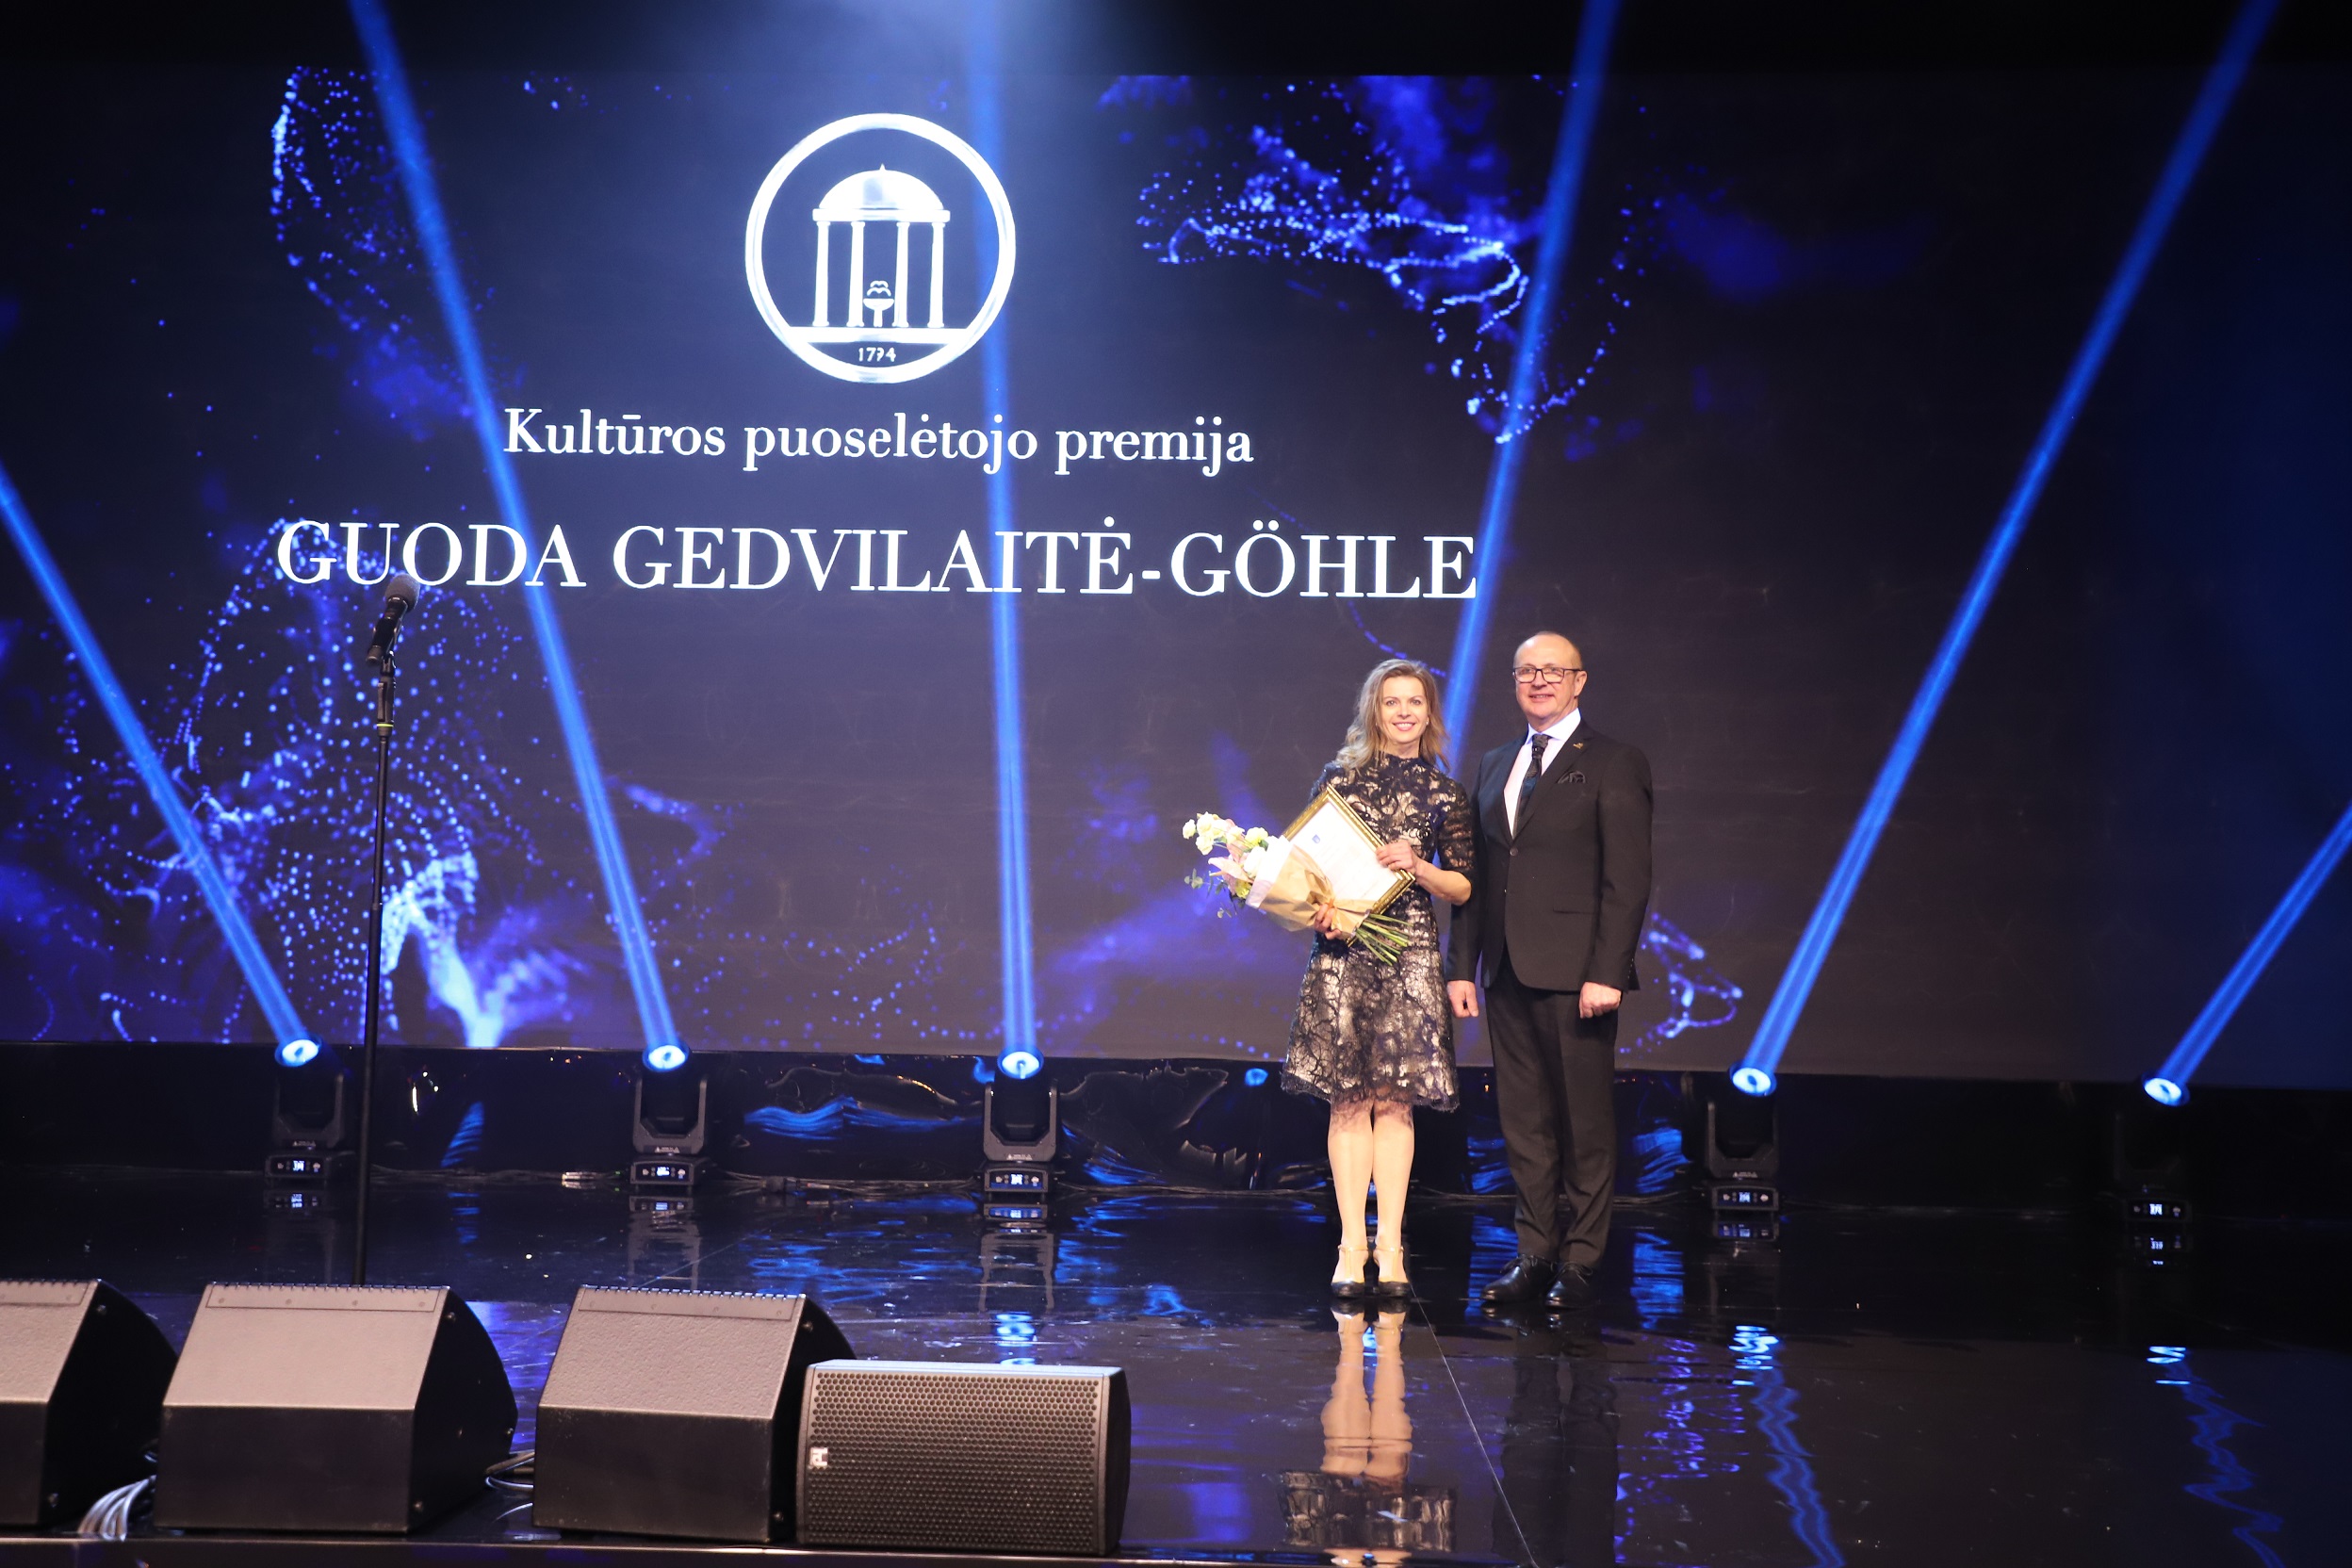 Tradicinė kultūros puoselėtojo premija ir diplomas įteiktas pianistei Guodai Gedvilaitei-Göhle | Druskininkų savivaldybės nuotr.